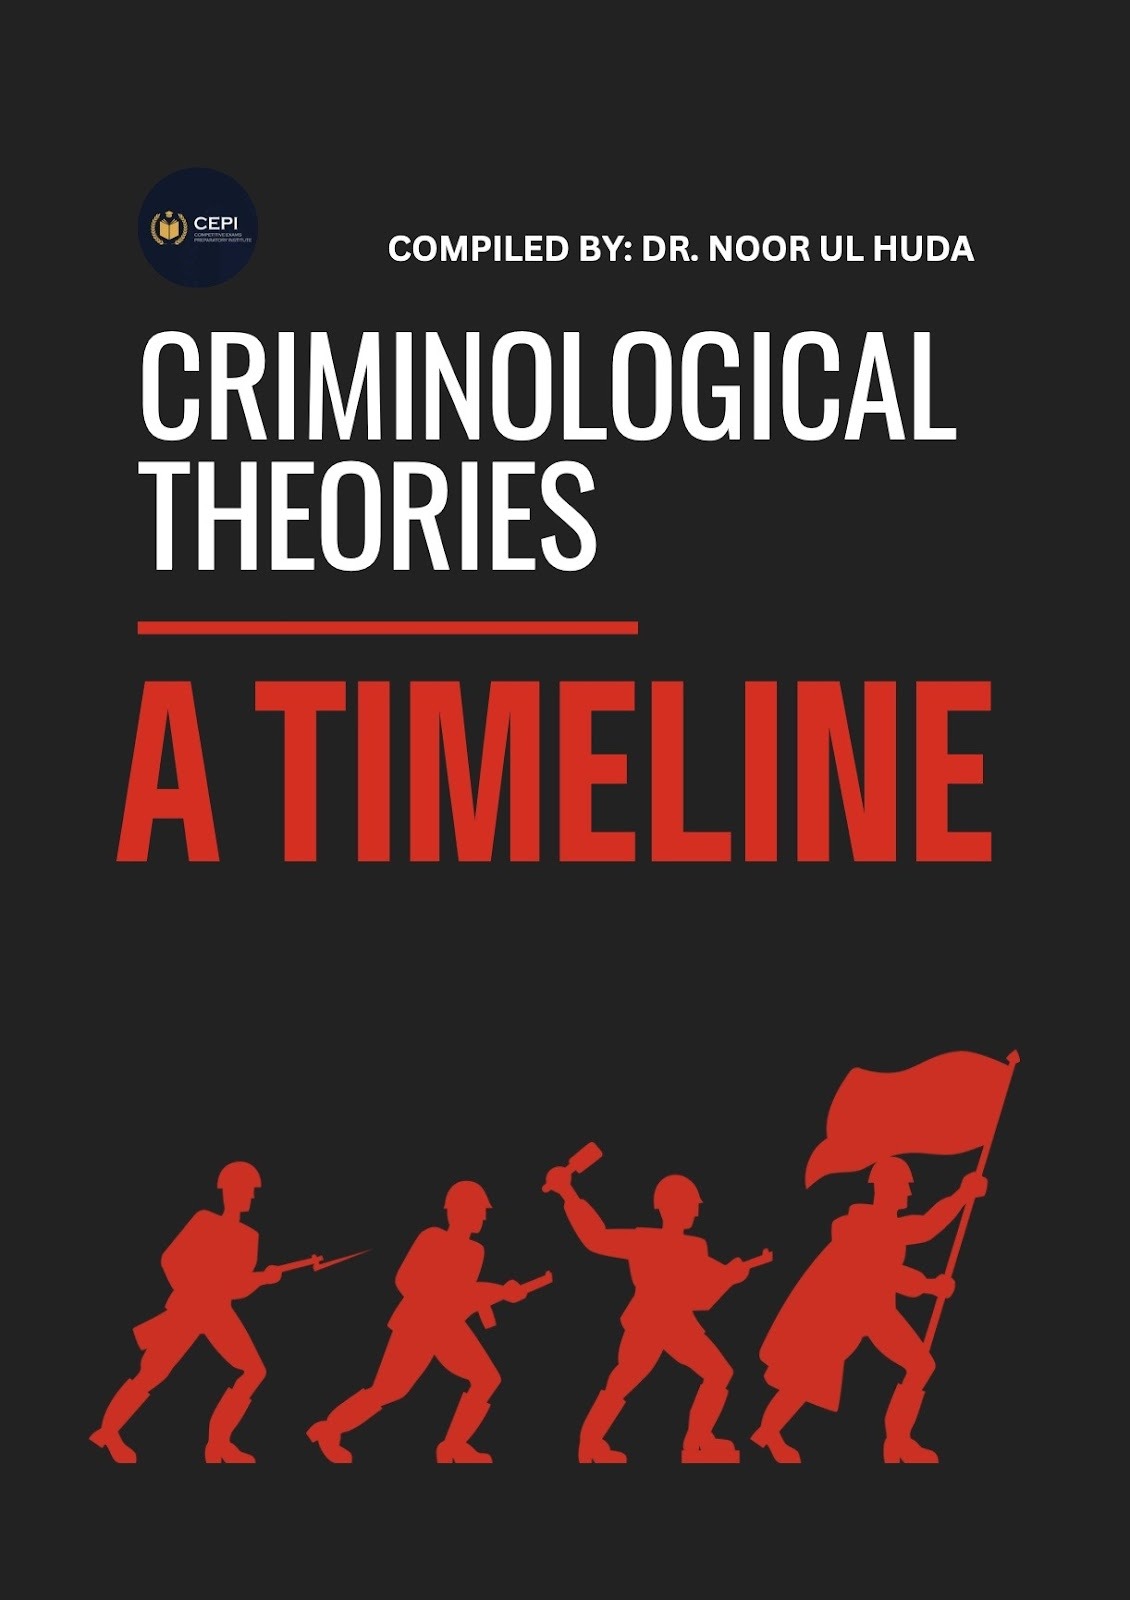 OG6-6 Quick Notes - Timeline of Criminological Theories By Dr. Noor ul Huda